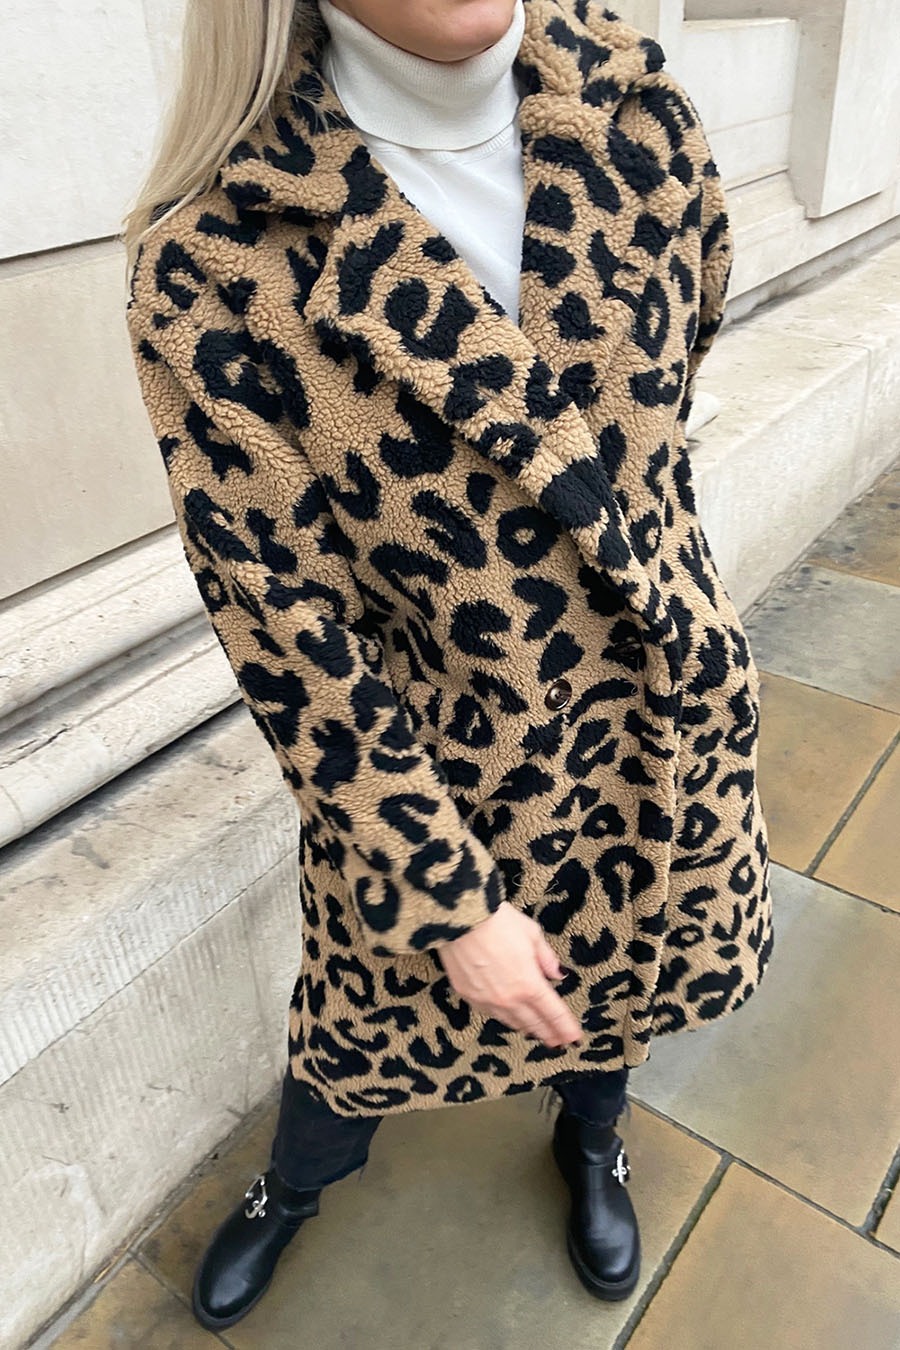 Fifi Teddy Coat In Camel & Black Leopard - mychicwardrobe